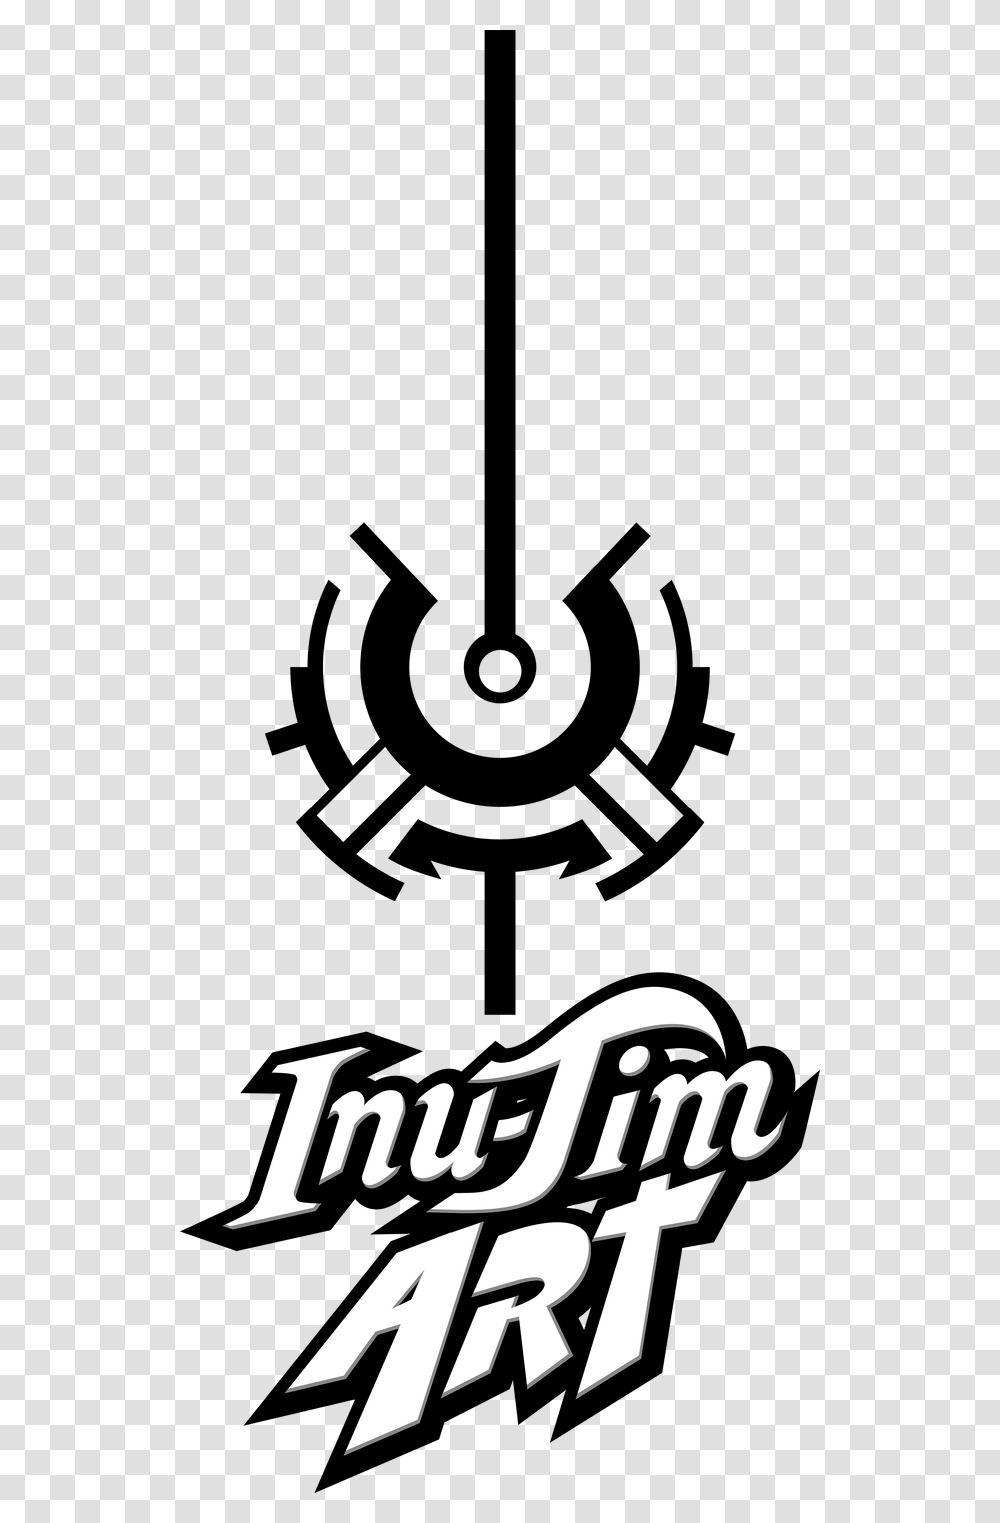 Inu Jim Logo, Face, Apparel Transparent Png